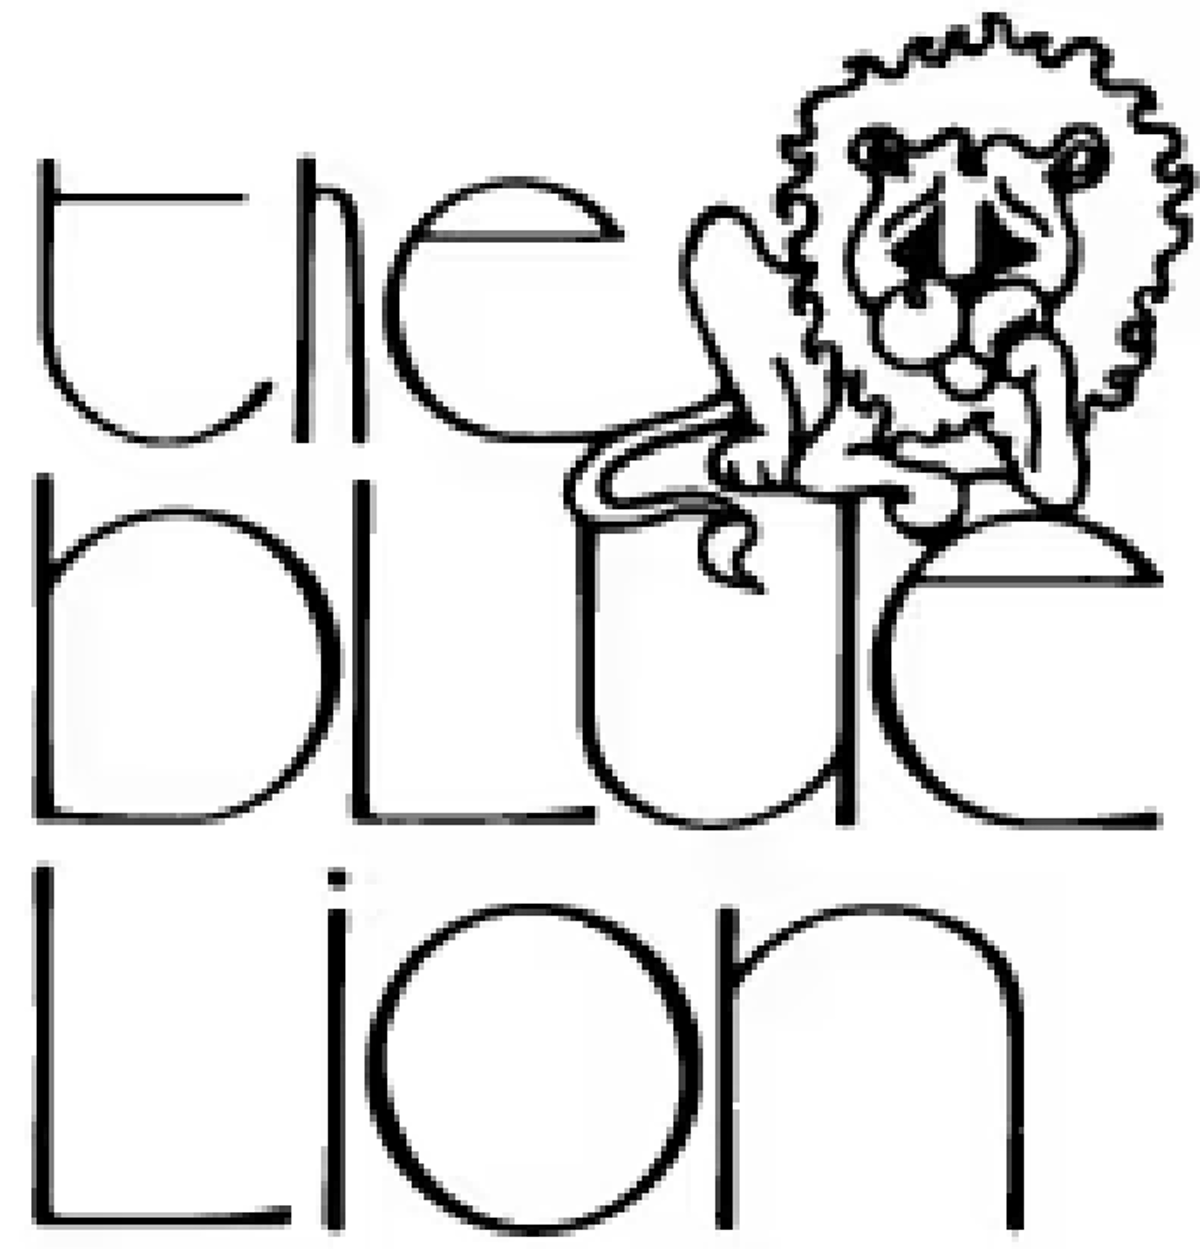 The Blue Lion logo